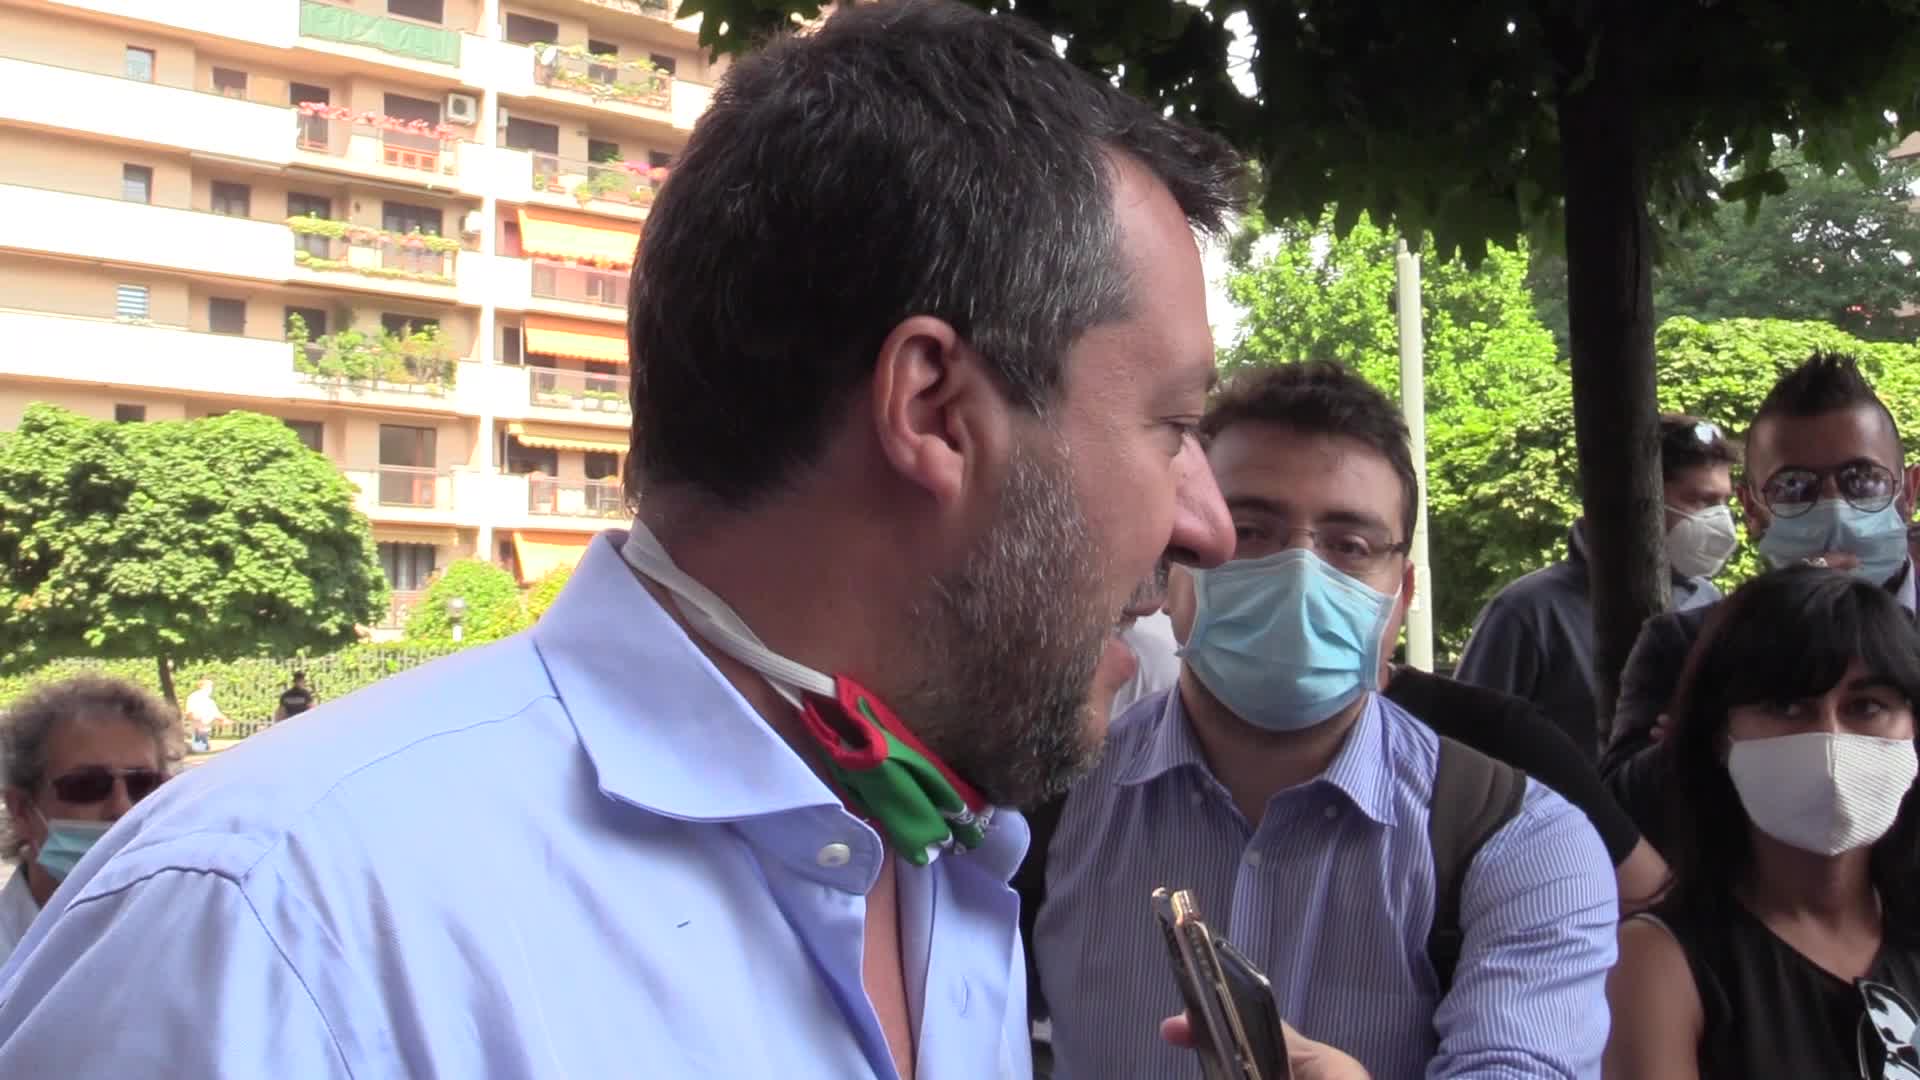 Regionali, Salvini: "Non do per persa neanche una partita"